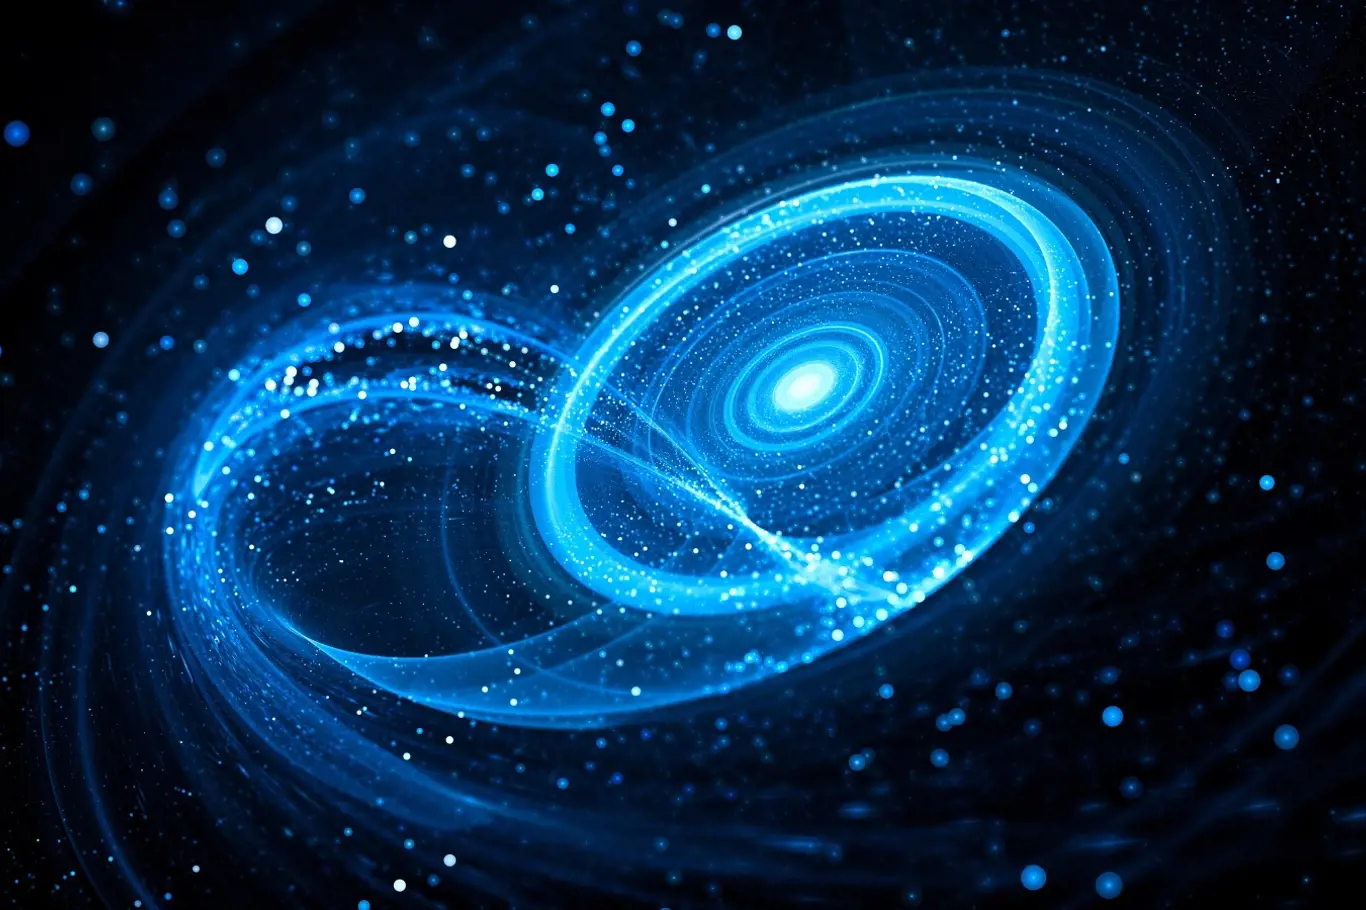 Kosmologický princip je postaven na zjištěních Mikuláše Koperníka z roku 1543, že Země není pevným středem stvoření.